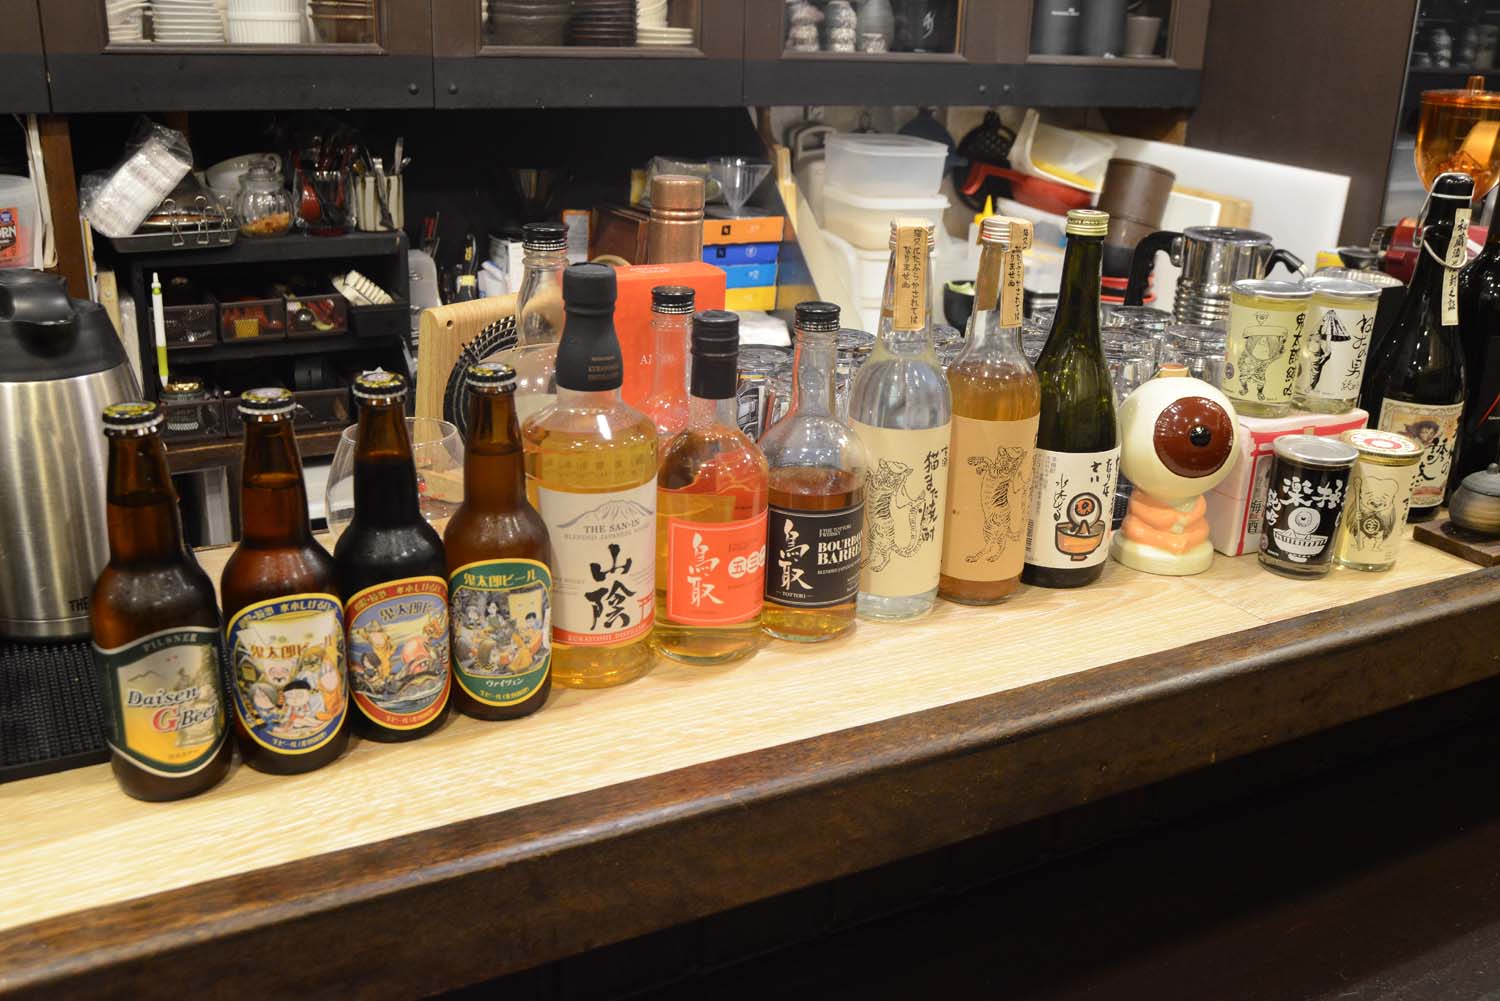 カウンターには各種酒のボトルが並び、『ゲゲゲの鬼太郎』ラベルのお酒もある。